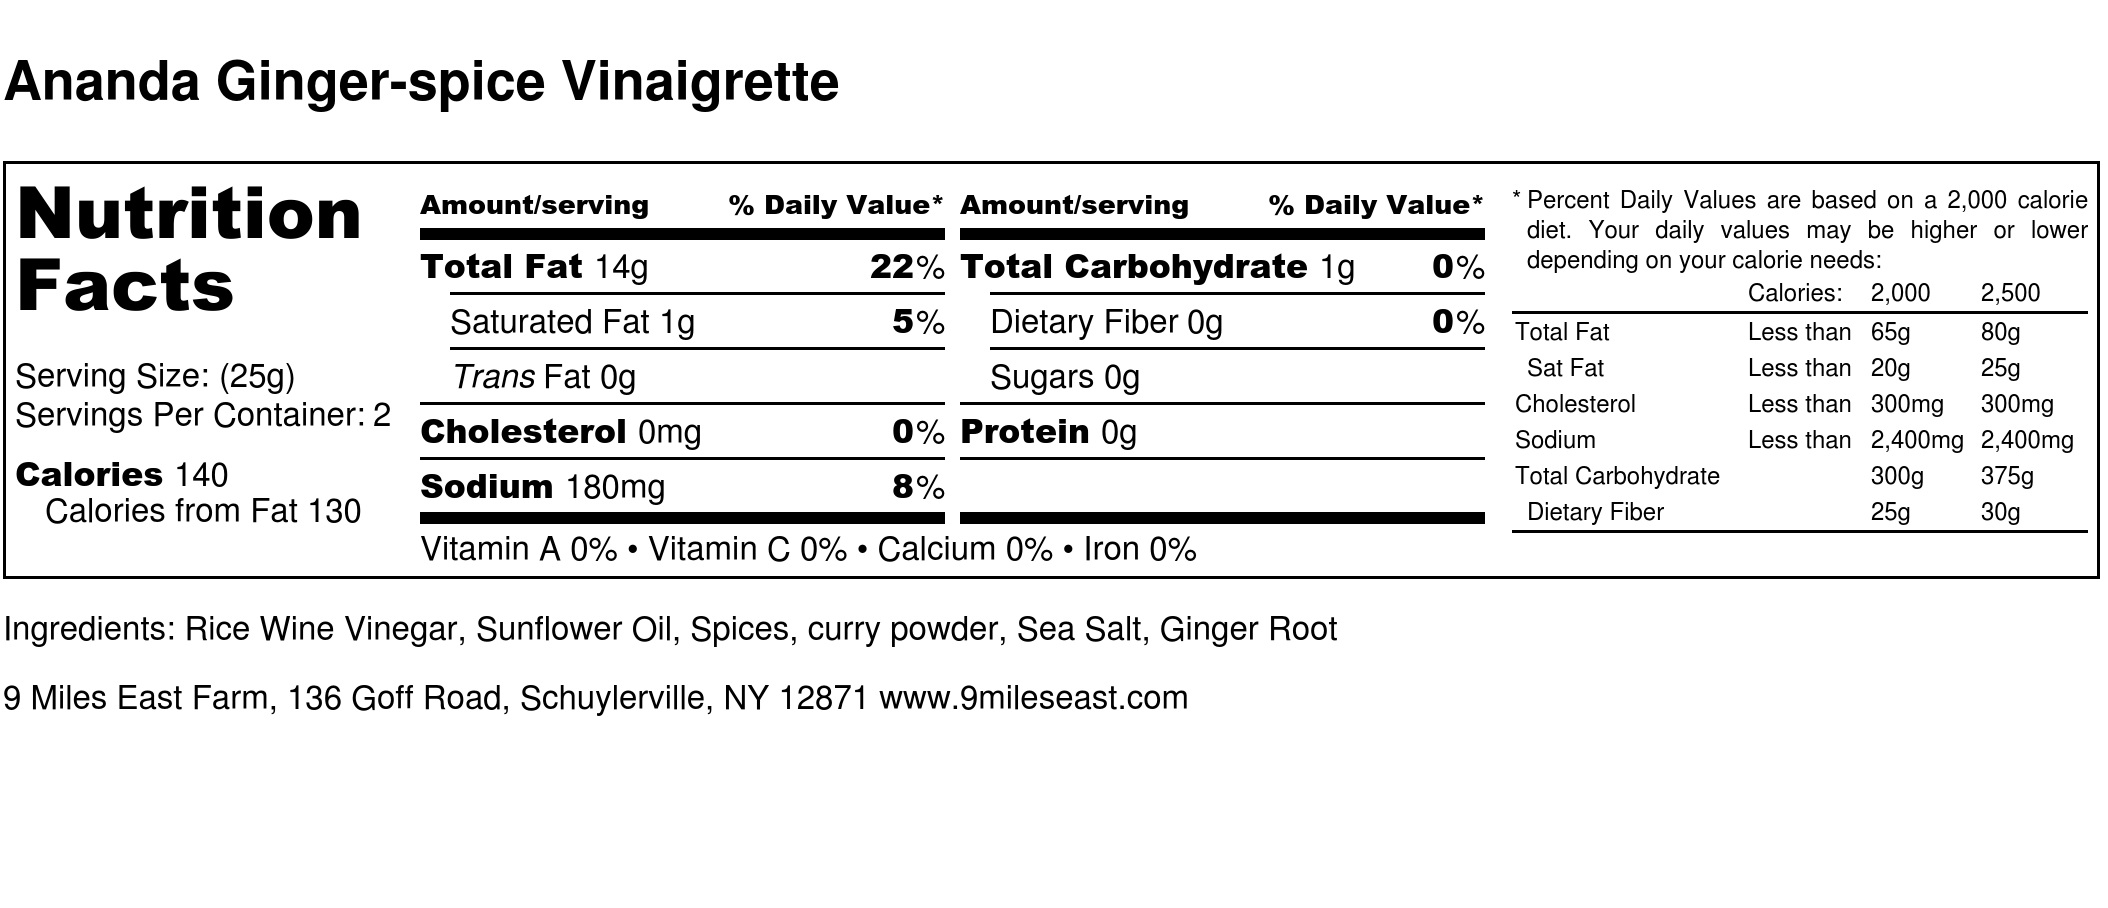 Ananda Ginger-spice Vinaigrette - Nutrition Label.jpg